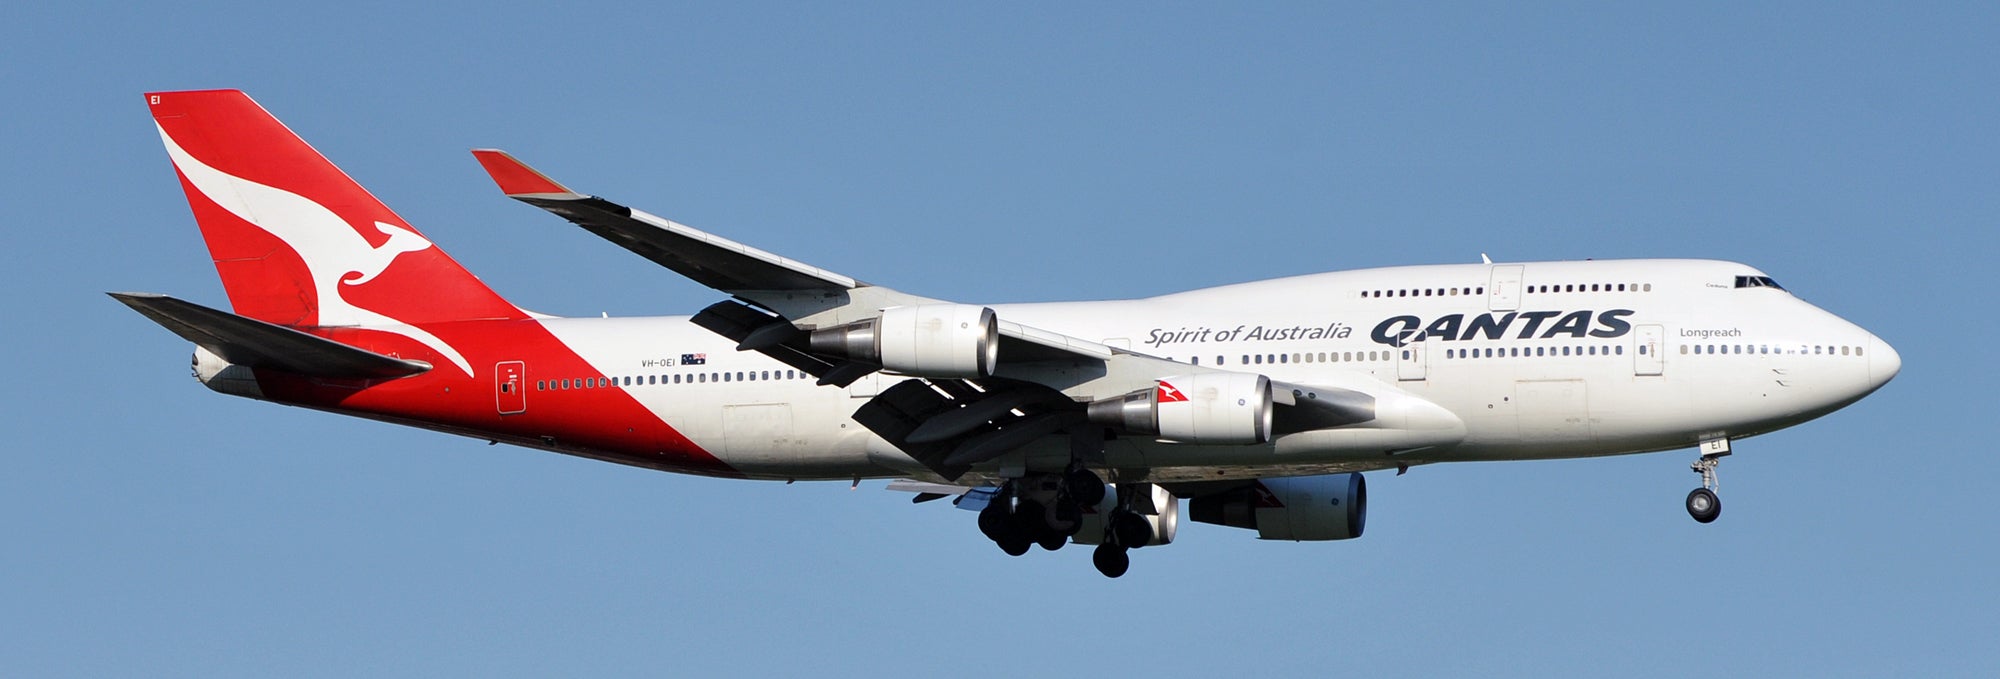 Qantas 747-400 Feature